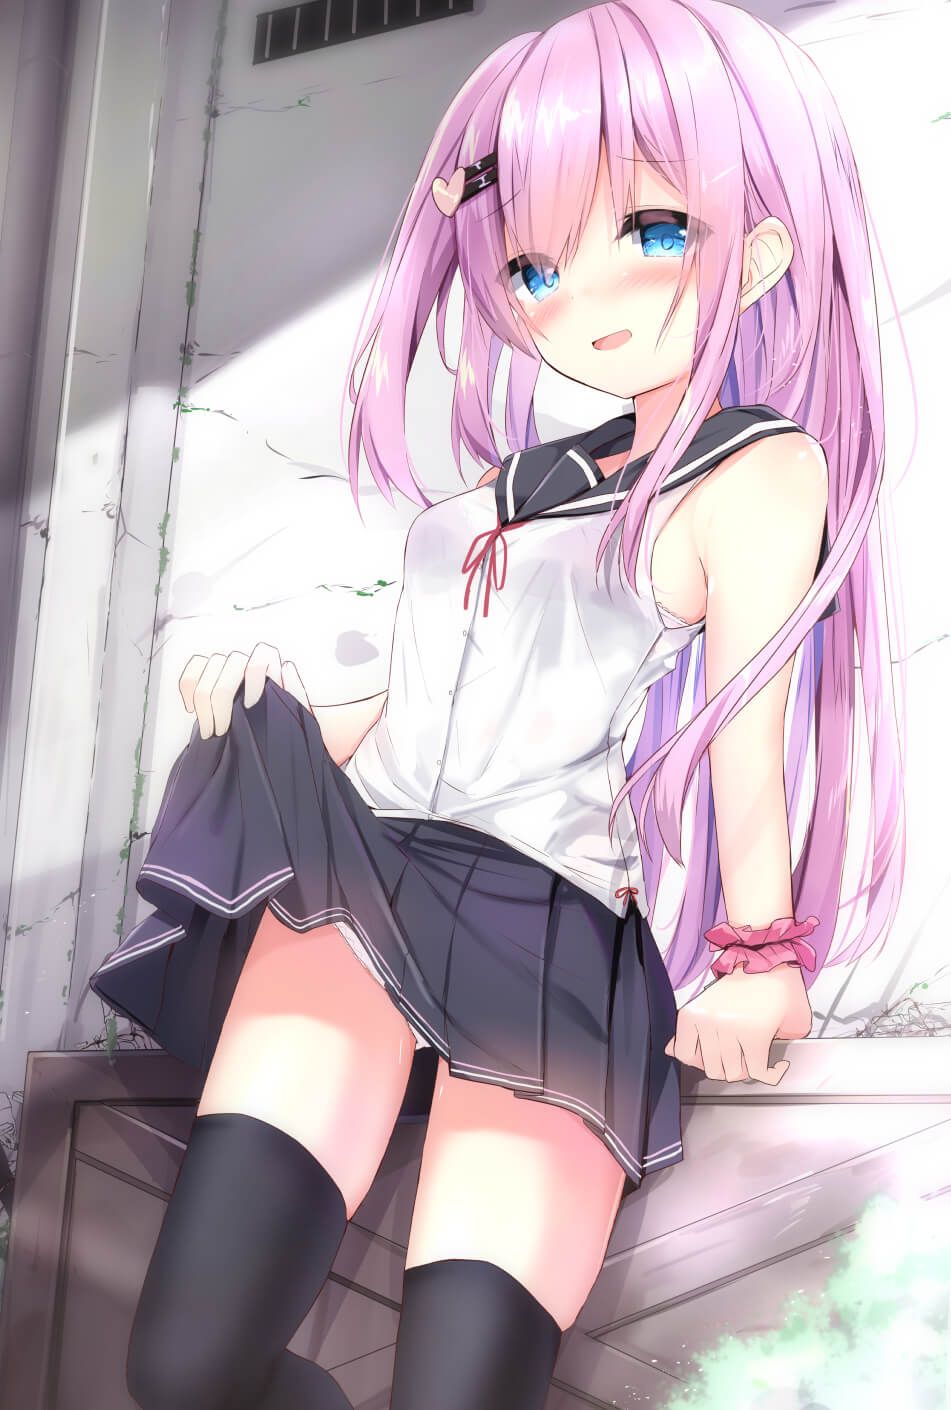 【2D】Erotic cute image of schoolgirl wearing school uniform (blazer sailor) 8